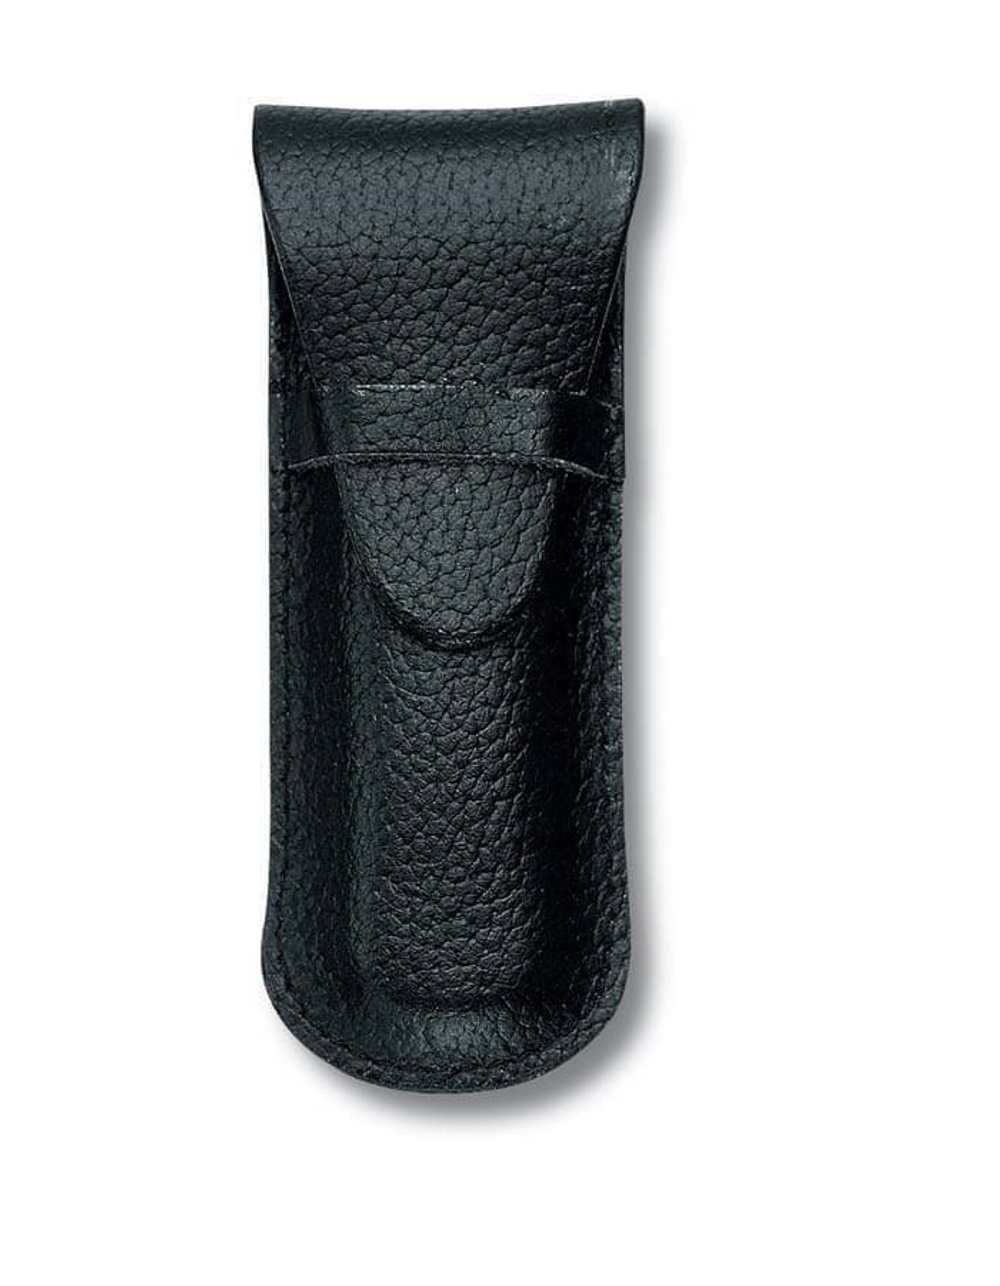 Чехол VICTORINOX для ножей-брелоков 58 мм толщиной 2-3 уровня, кожаный, чёрный